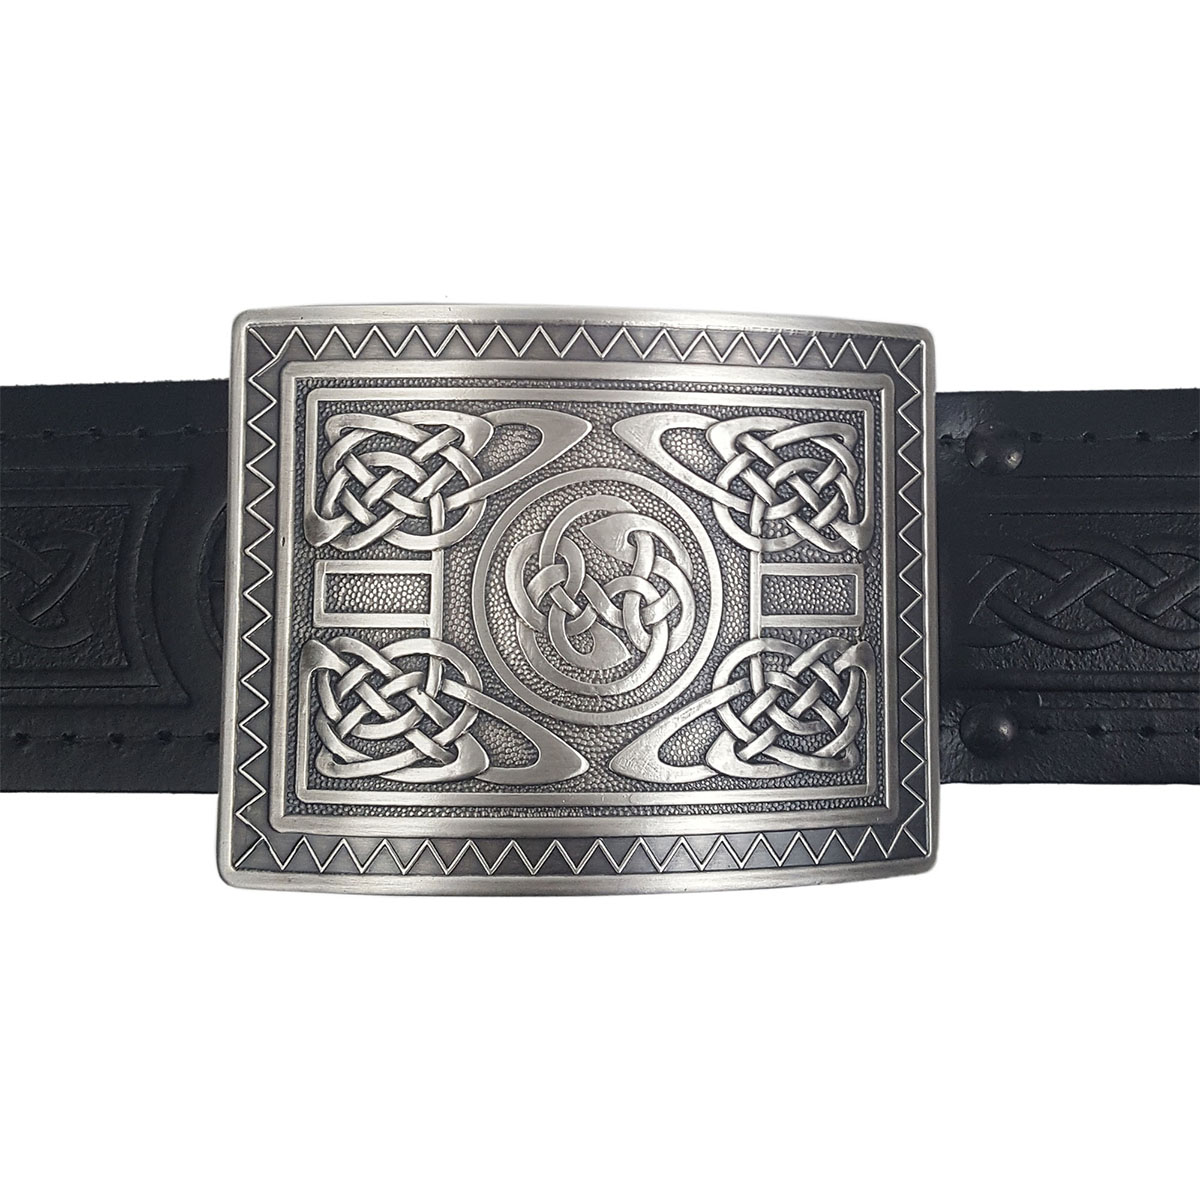 HS Scottish Kilt Belt Buckle Irish Shamrock Antique Finish/Highland Buckles 